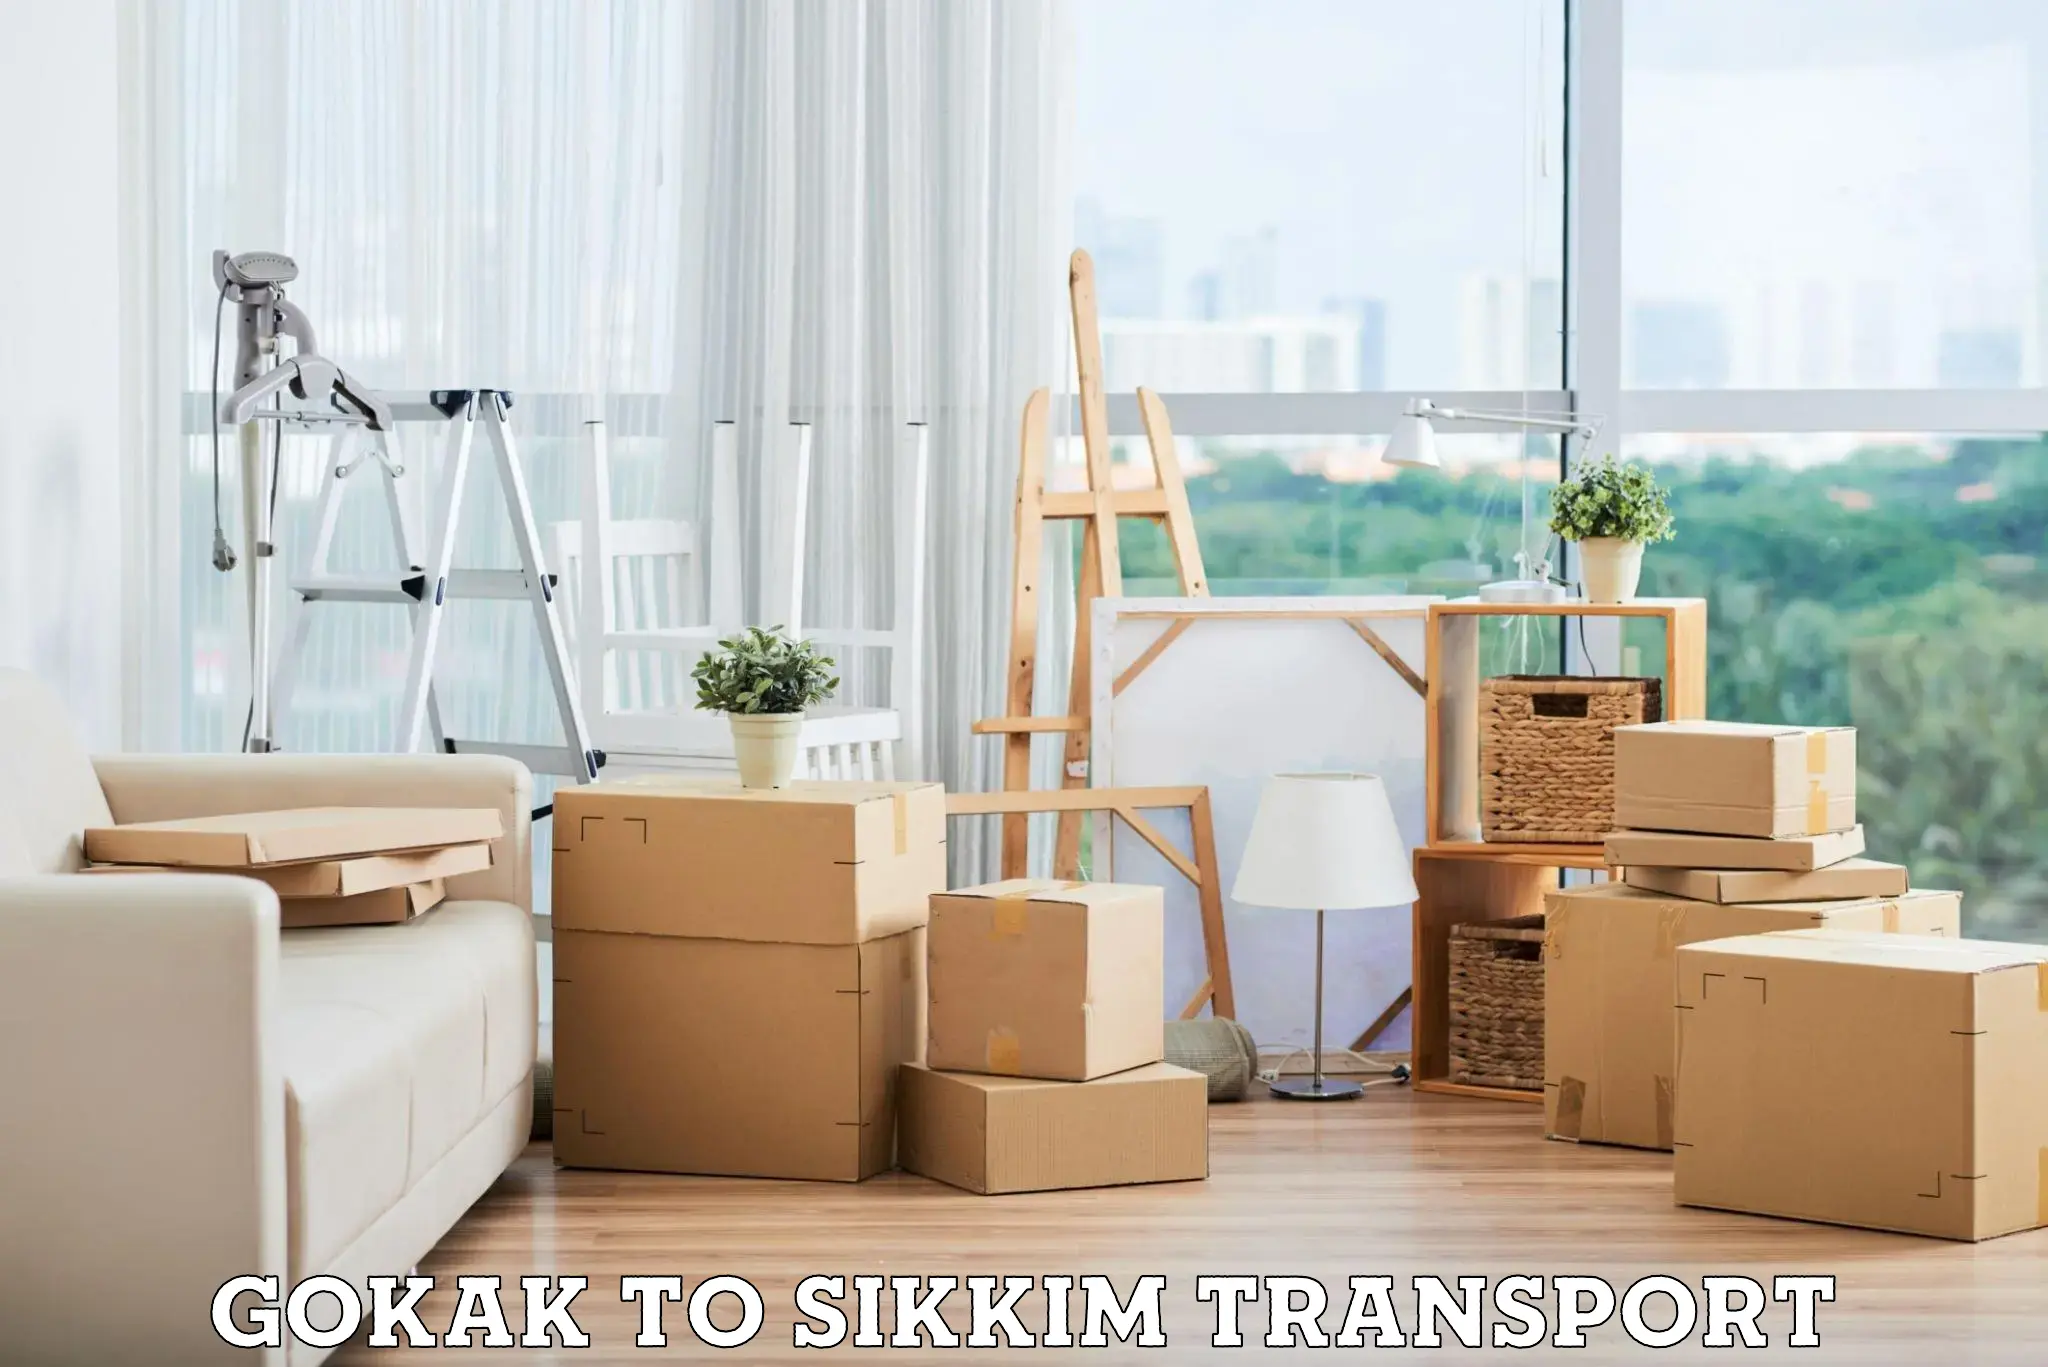 Goods transport services Gokak to North Sikkim